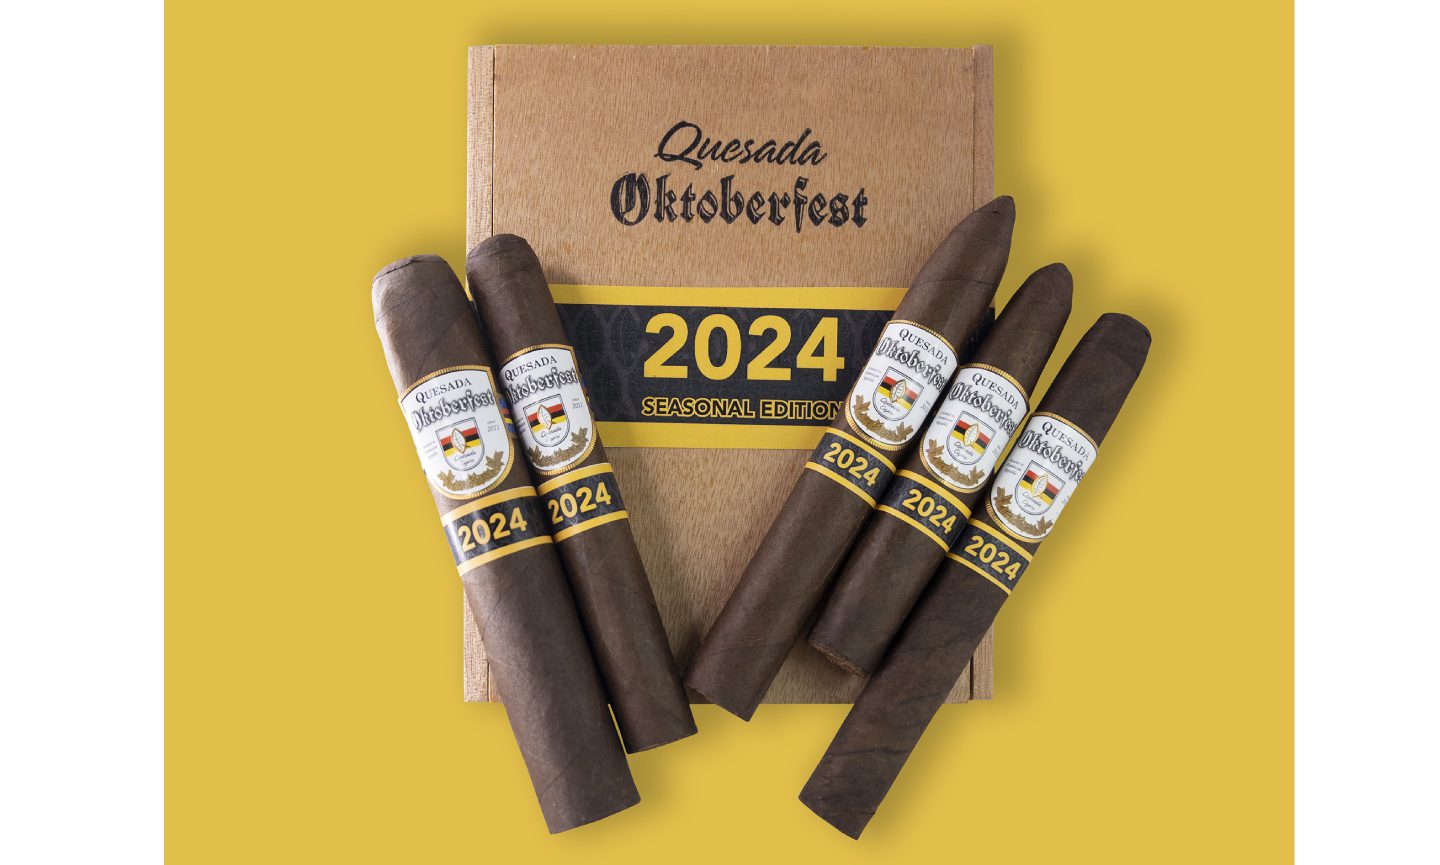 quesada-cigars-announces-quesada oktoberfest-2024-edition